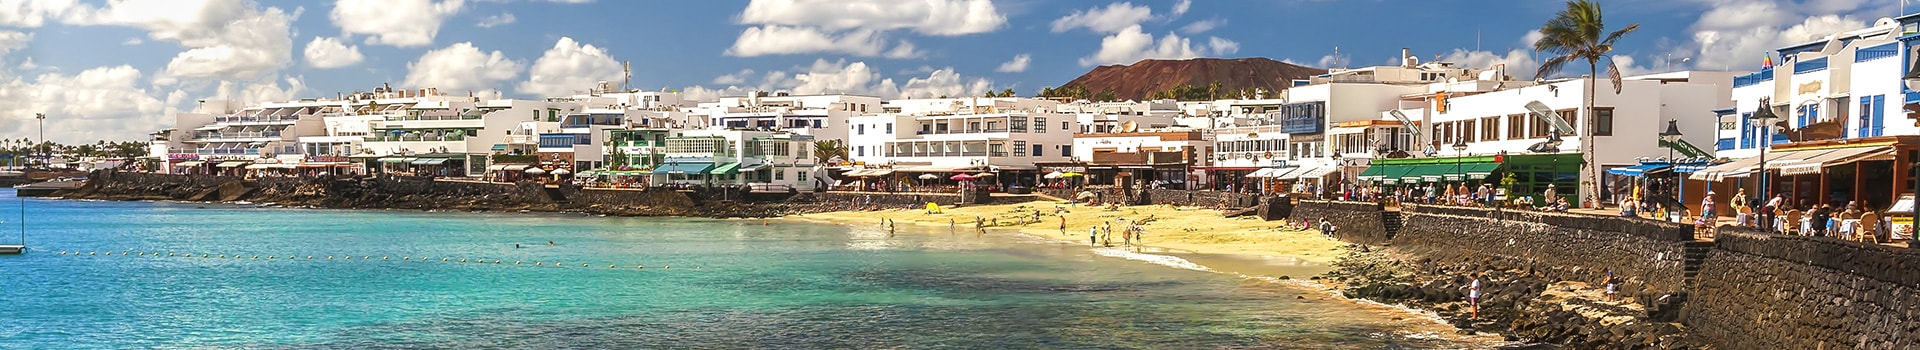 Biglietti da Nave da Corralejo (Fuerteventura) a Playa Blanca (Lanzarote)